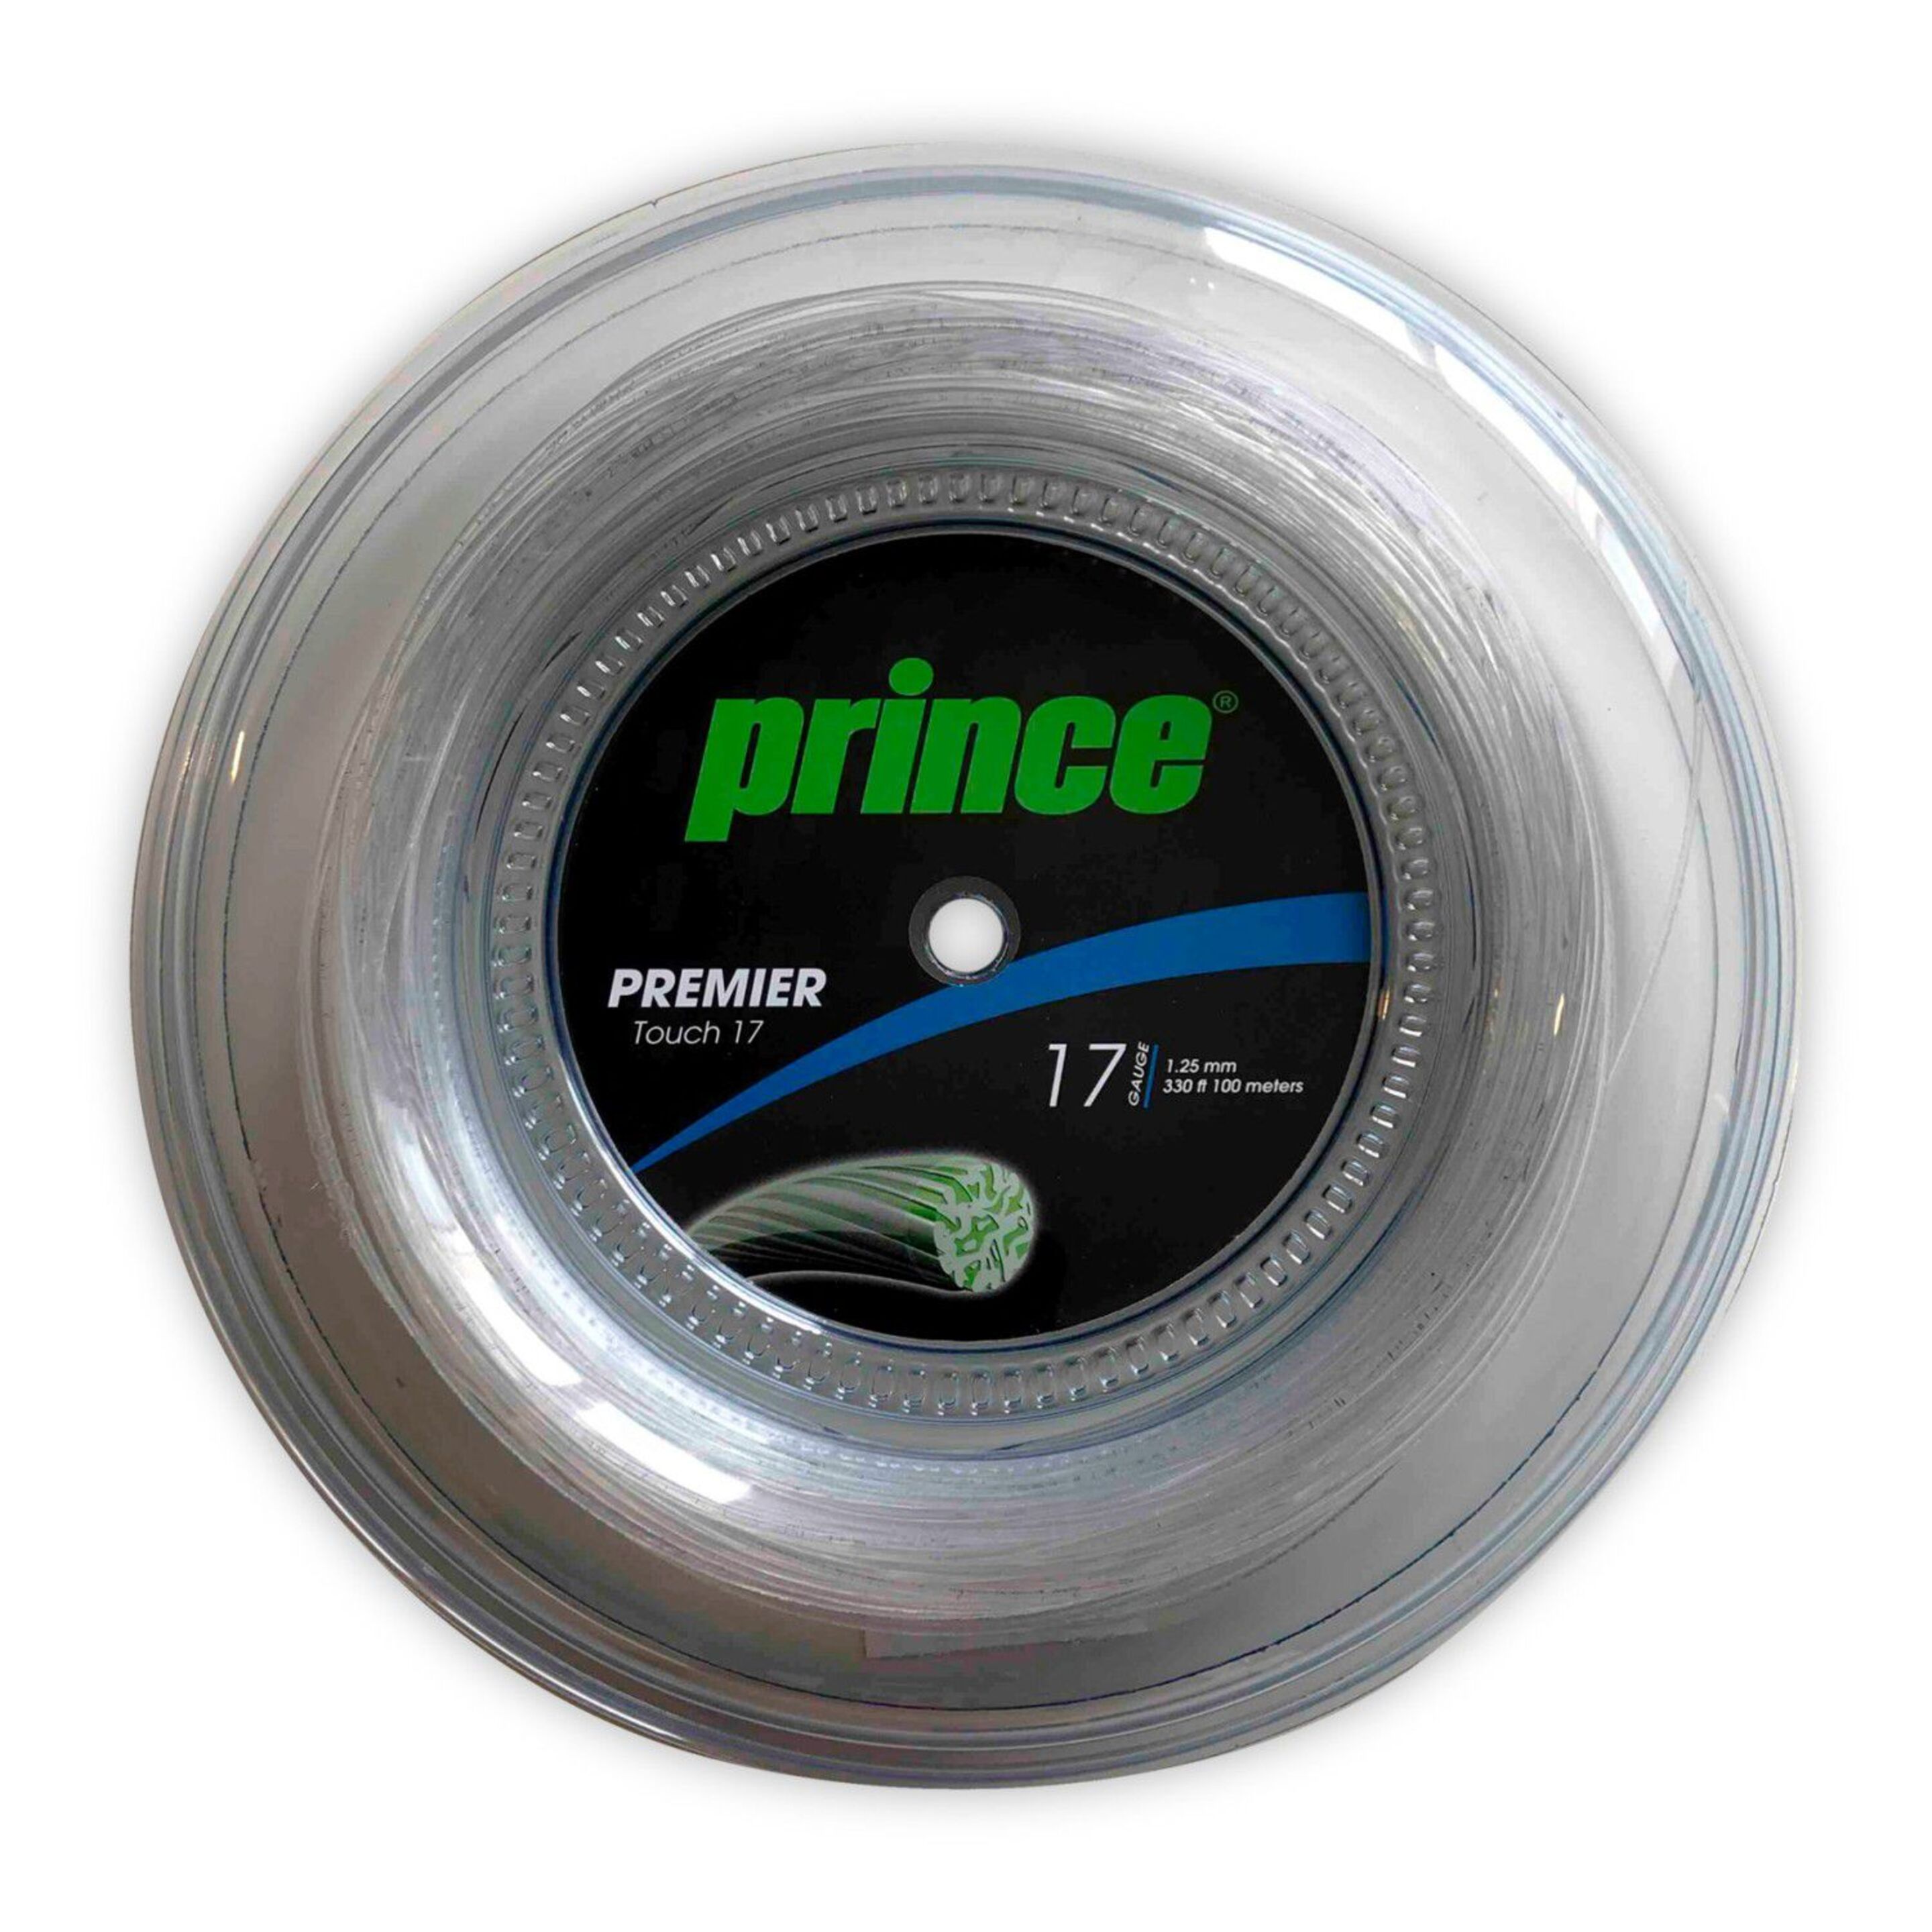 Cordaje De Tenis Prince Premier Touch 17 (1.25 Mm) (100m) - gris - 